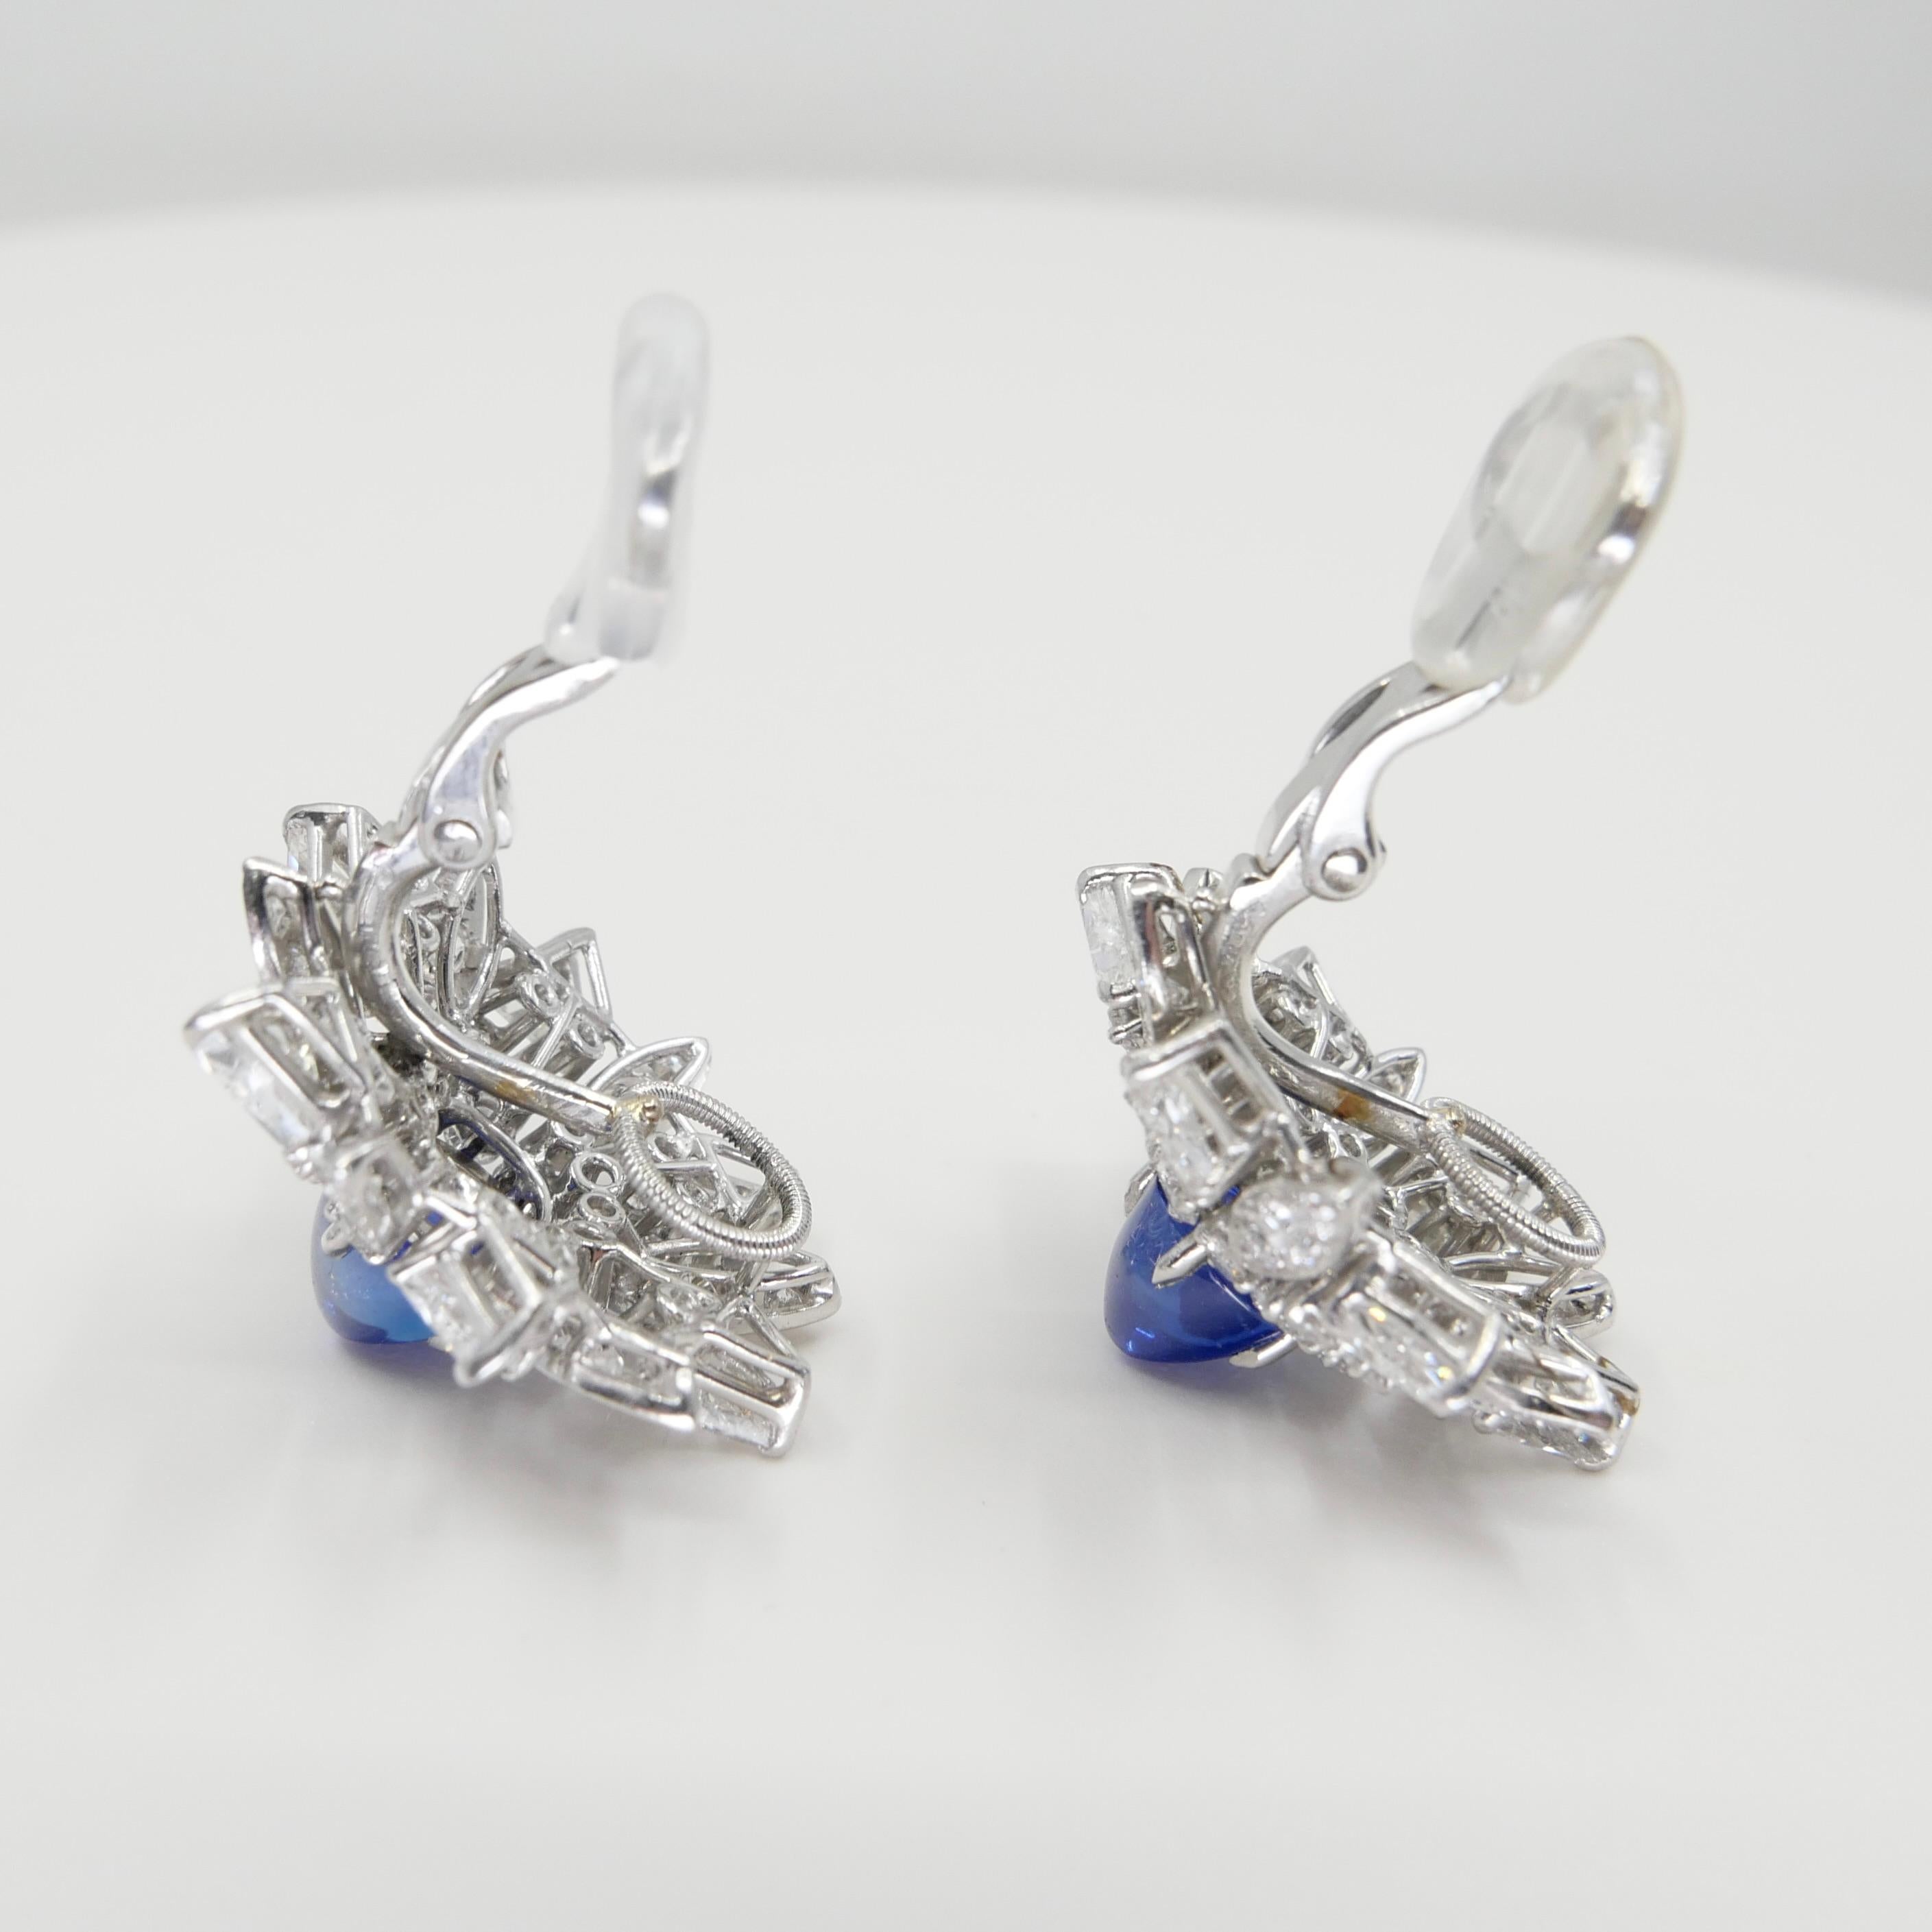 Certified Kashmir Sapphire No Heat Diamond Cluster Earrings, Cornflower Blue 4